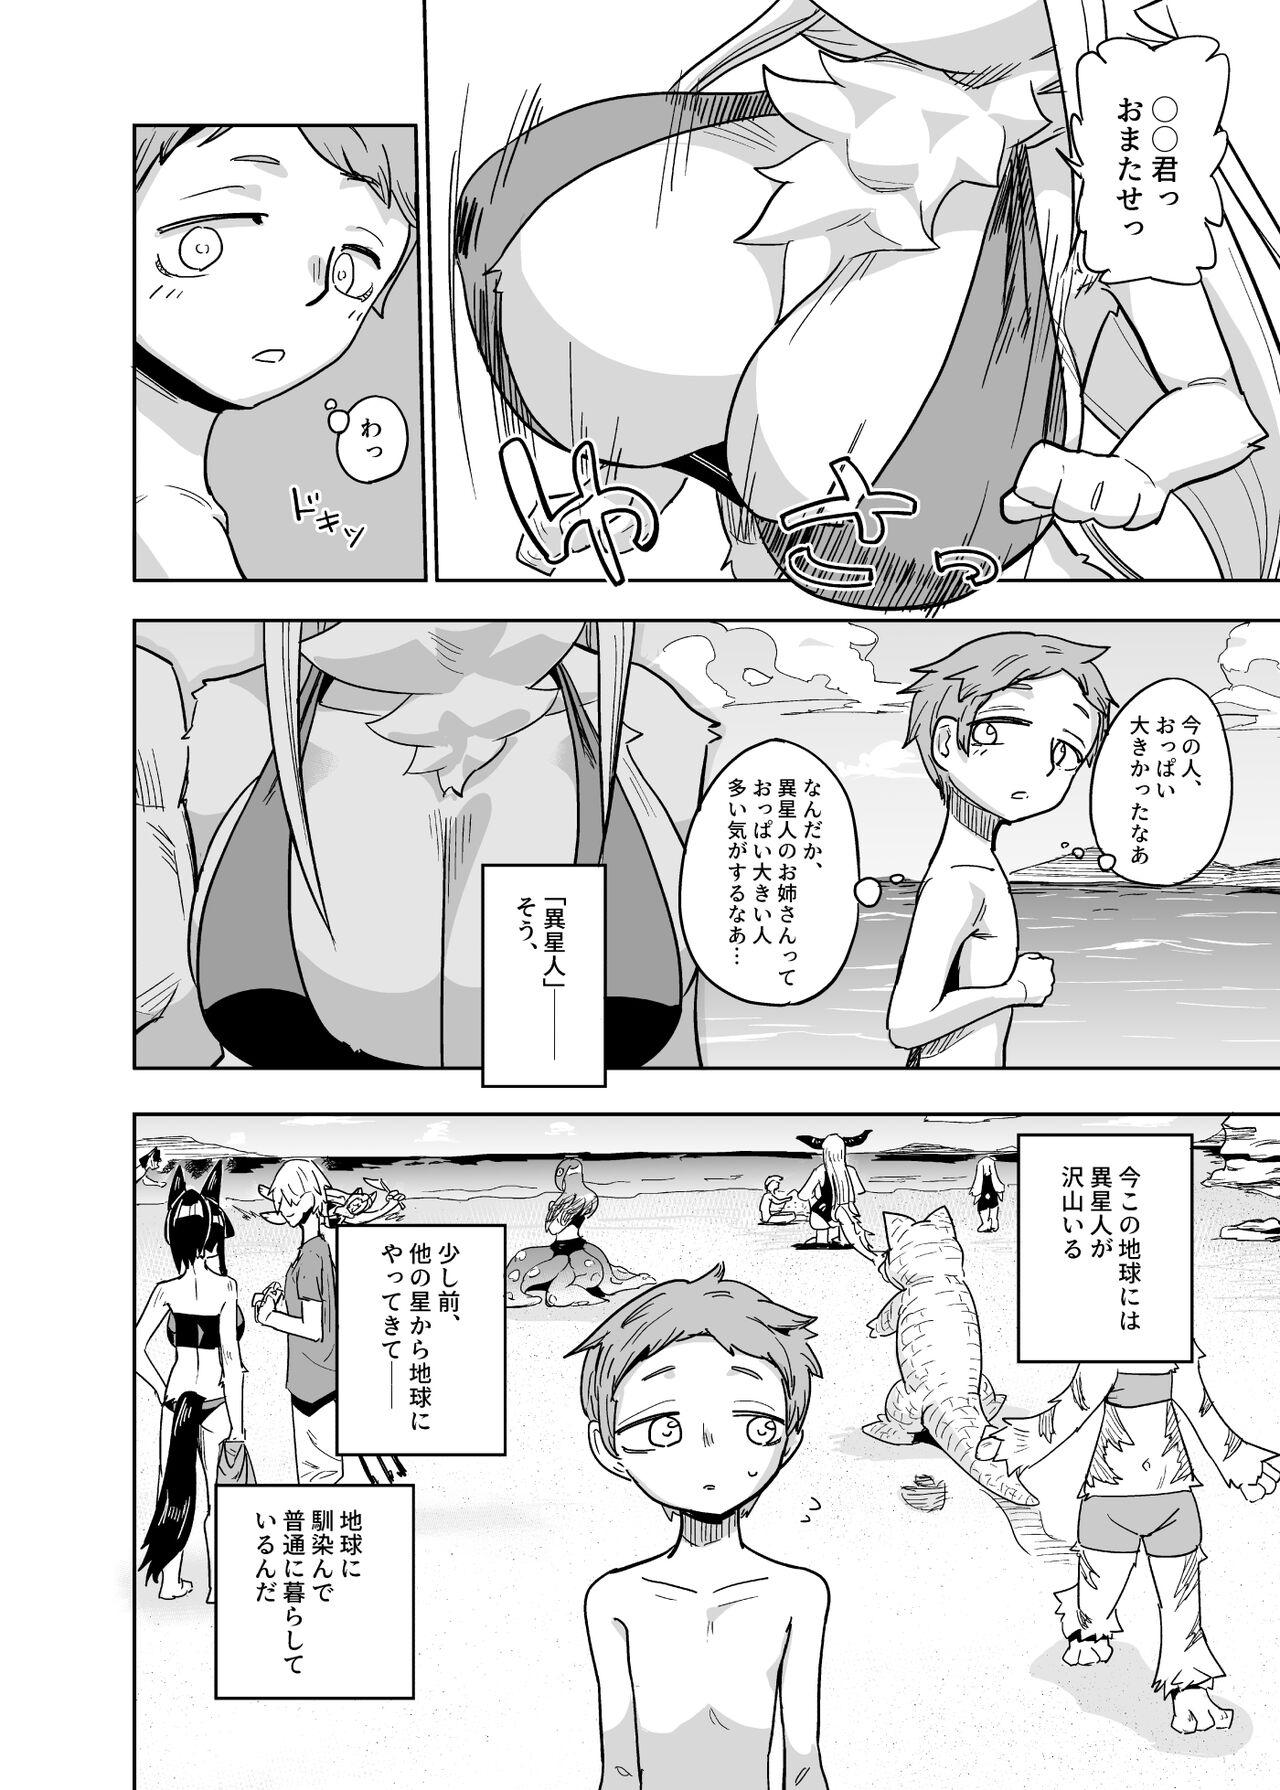 Realitykings Iseijin no Hanshoku Nikki 7 - Original Flaca - Page 2